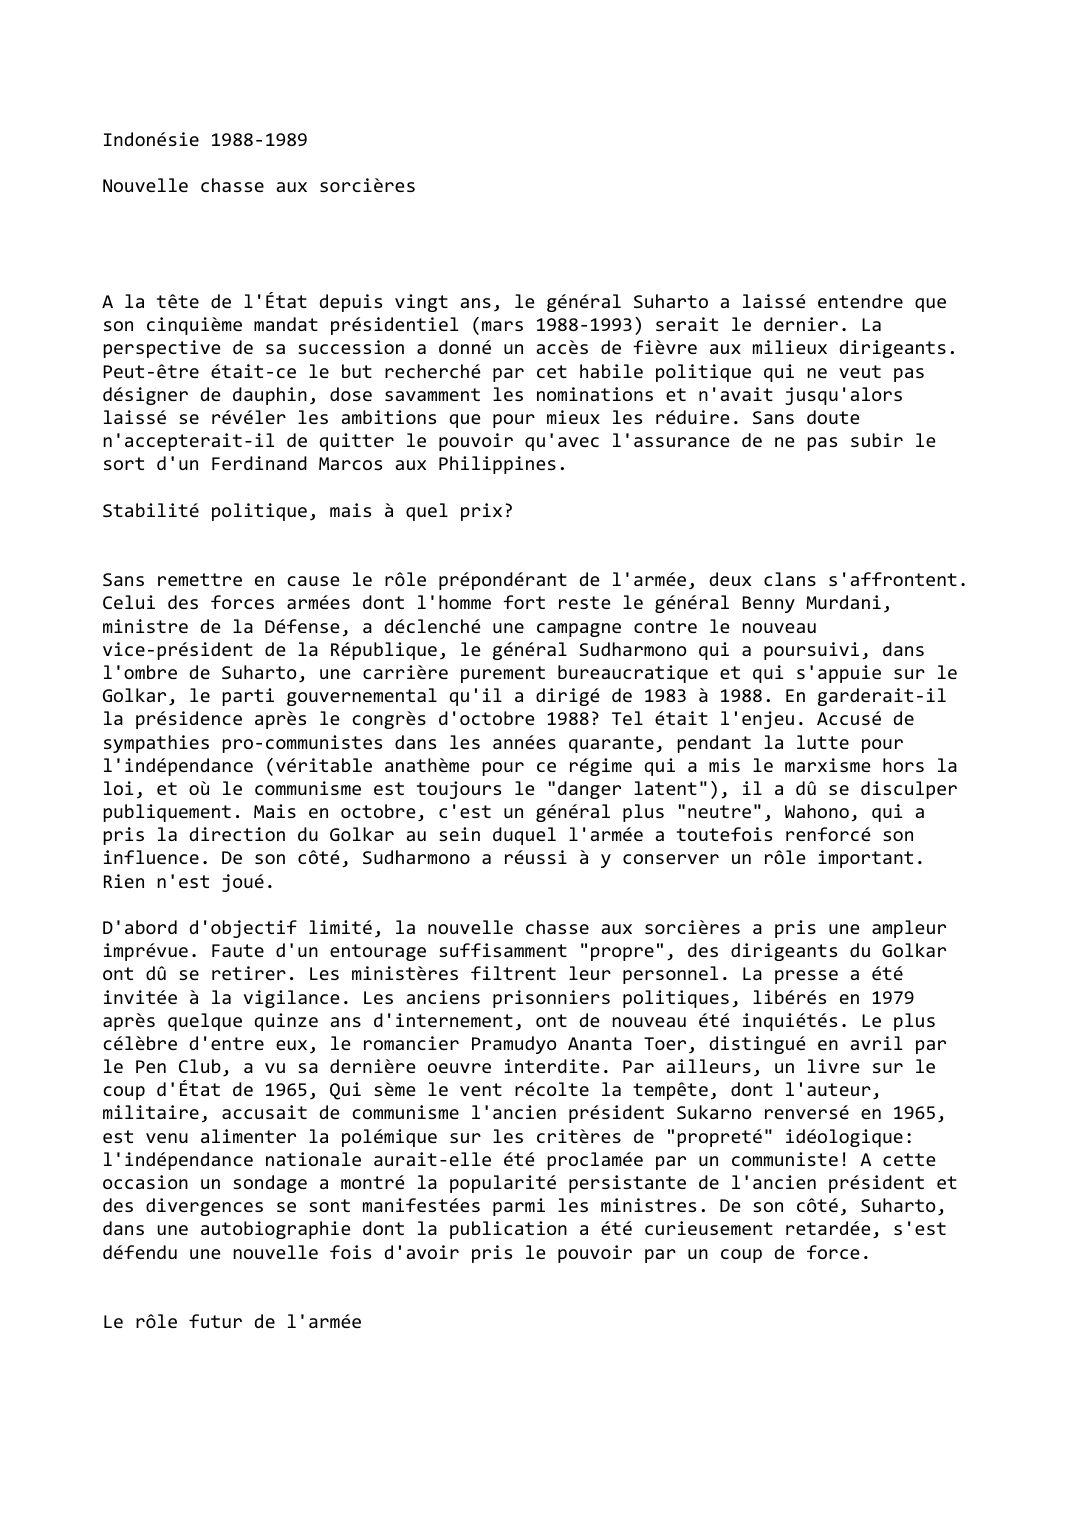 Prévisualisation du document Indonésie (1988-1989)

Nouvelle chasse aux sorcières